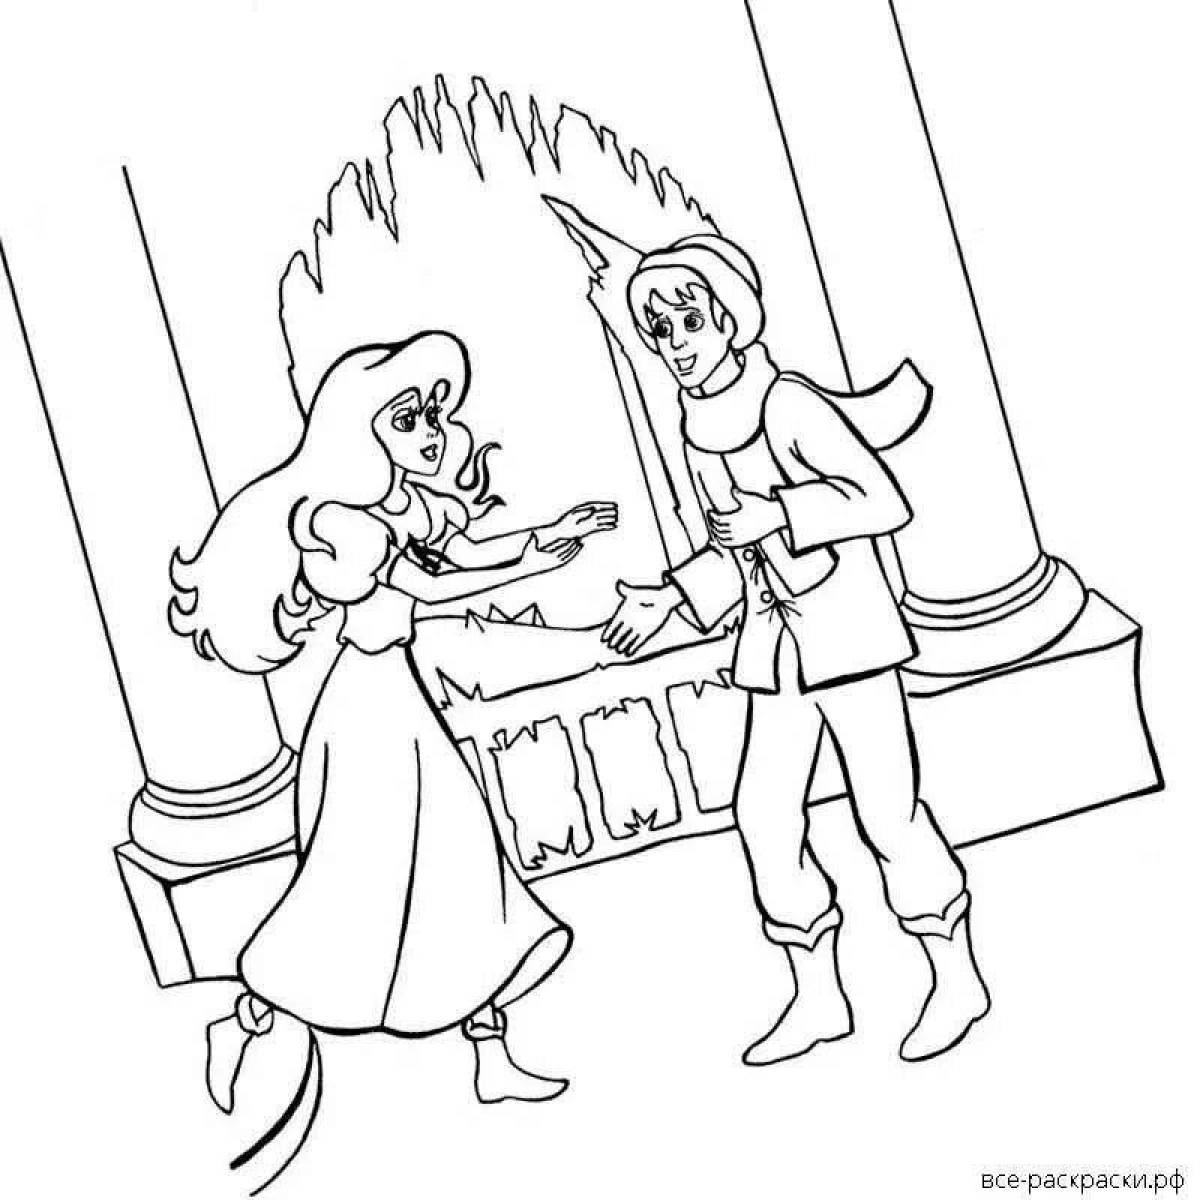 Нарисовать иллюстрацию к сказке снежная королева. Раскраска снежной королевы из сказки Снежная Королева. Раскраски снежной королевы Кая и Герды.